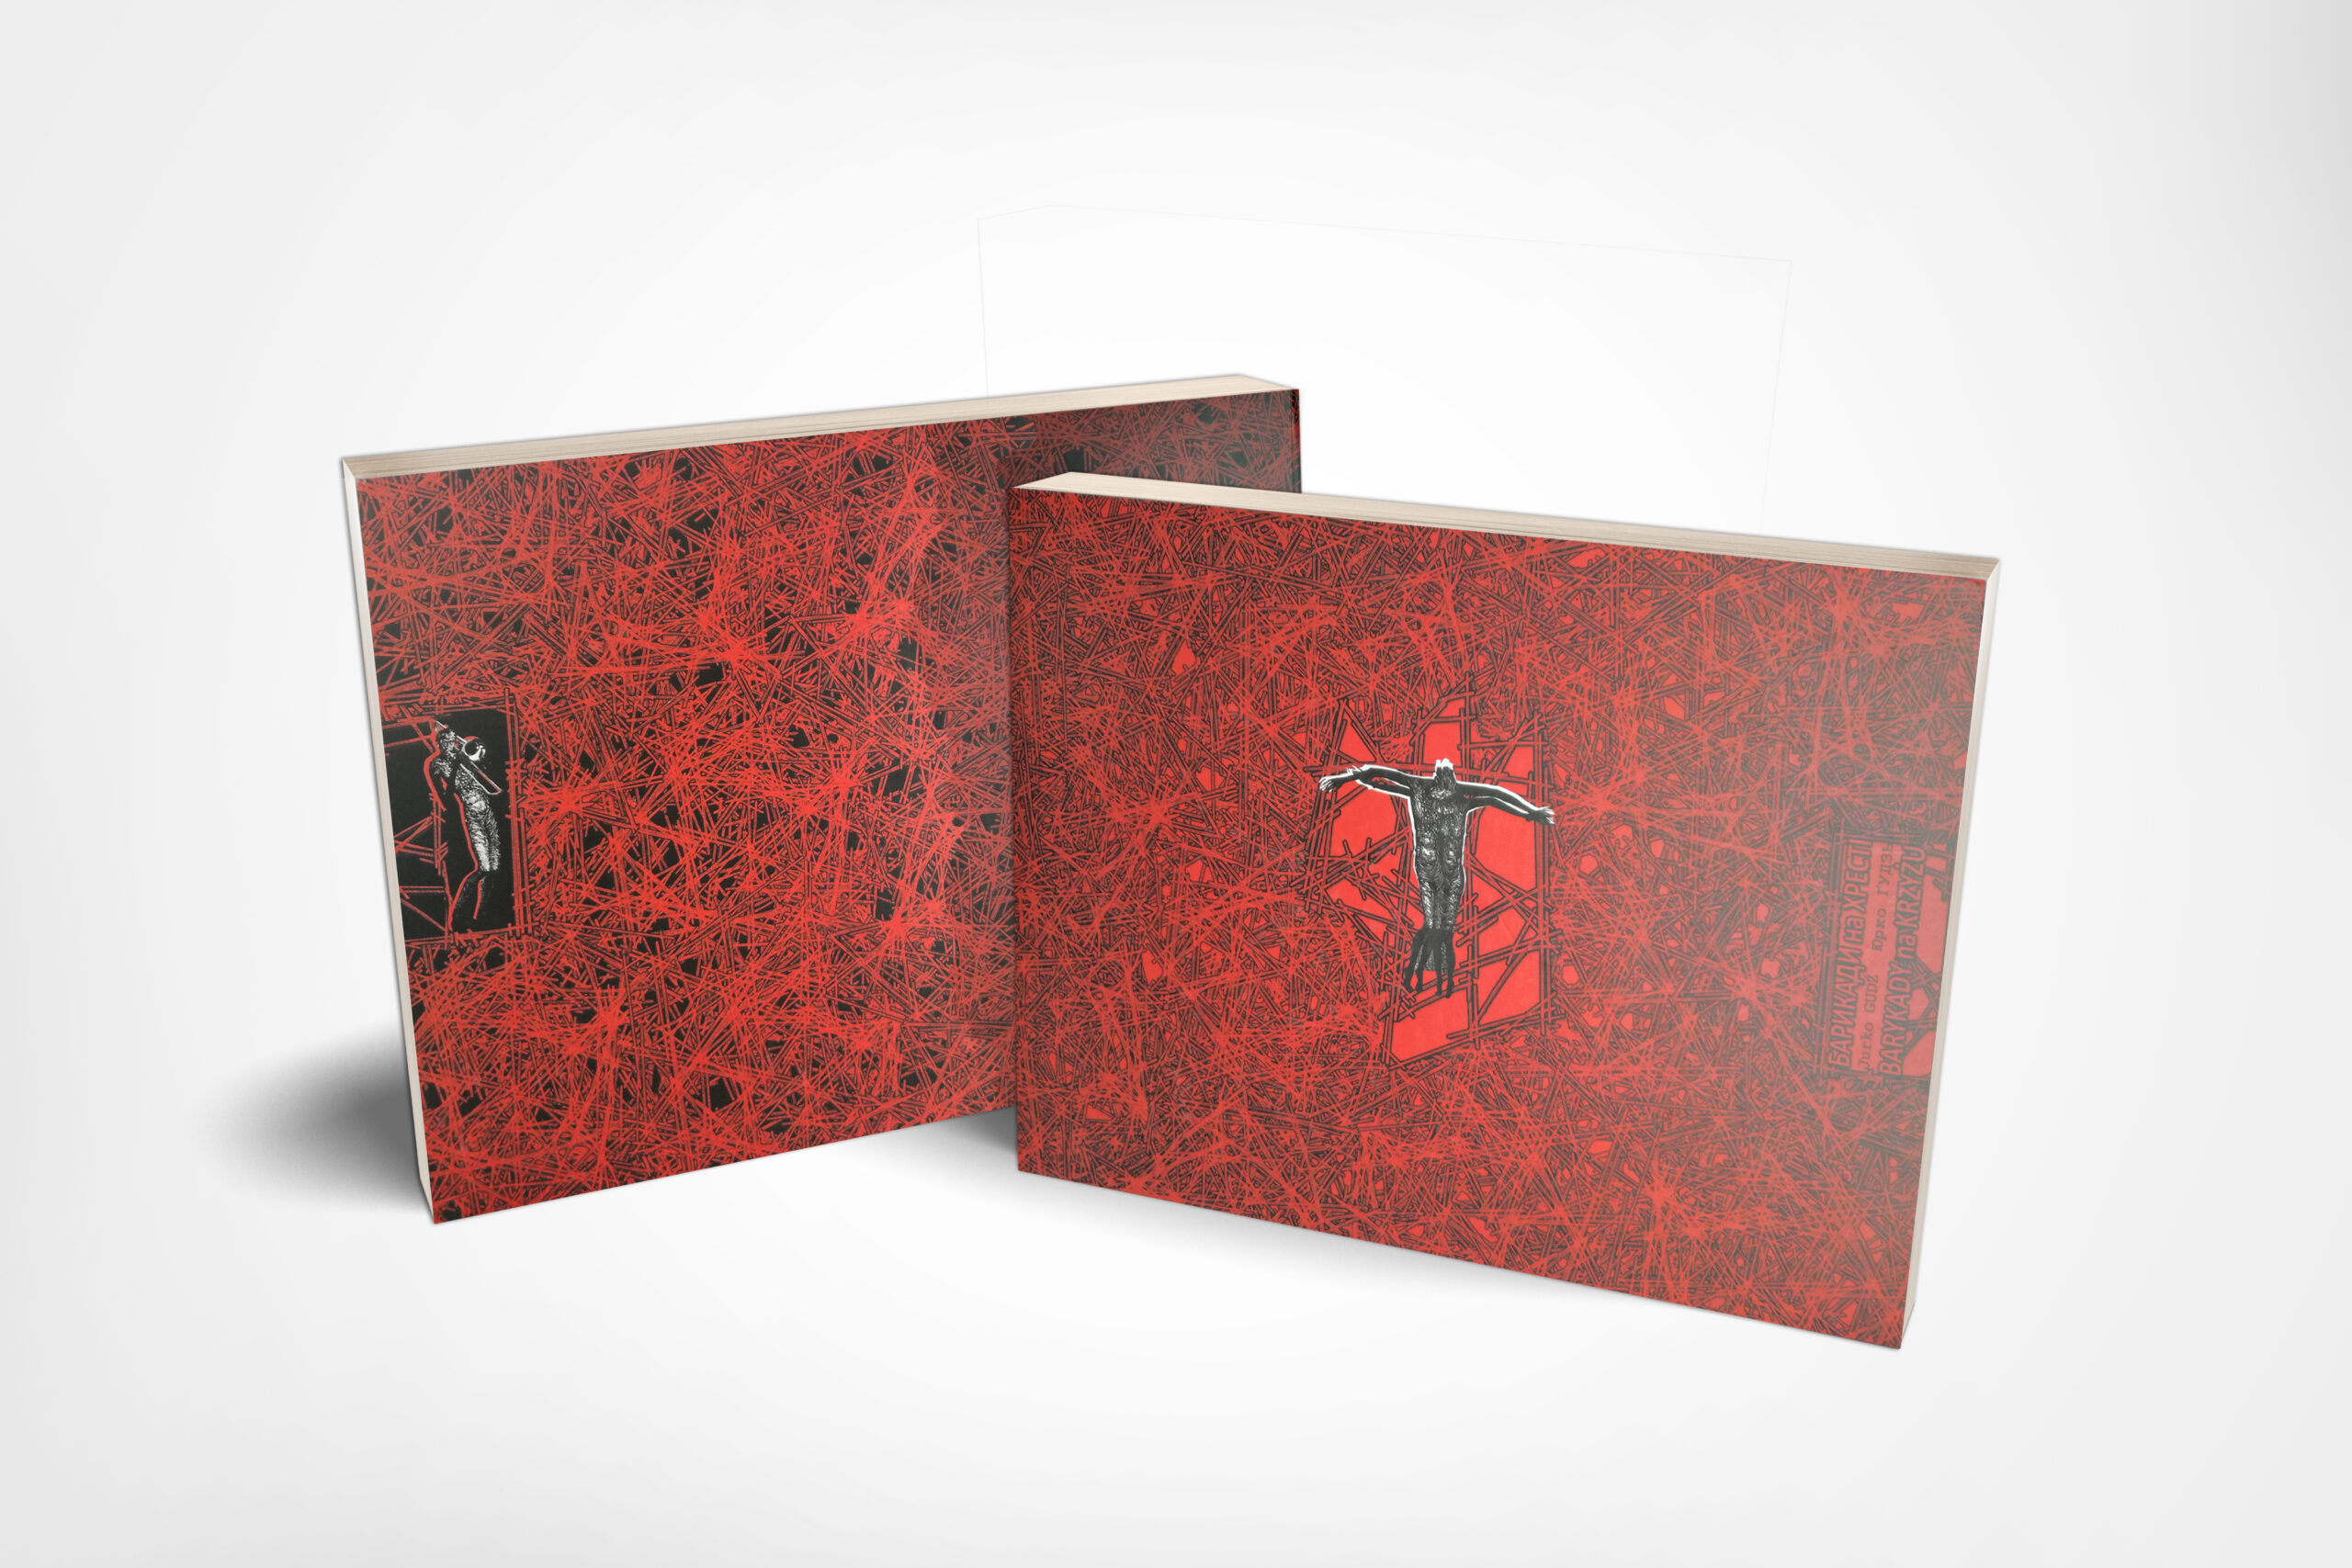 Okładka poematu Barykady na Krzyżu: pokryta czerwienią jak krew, cała powierzchnia okładki zapełniona jest cierniami, na samym środku czarna postać z ramionami rozpostartymi na boki, jak ukrzyżowana.